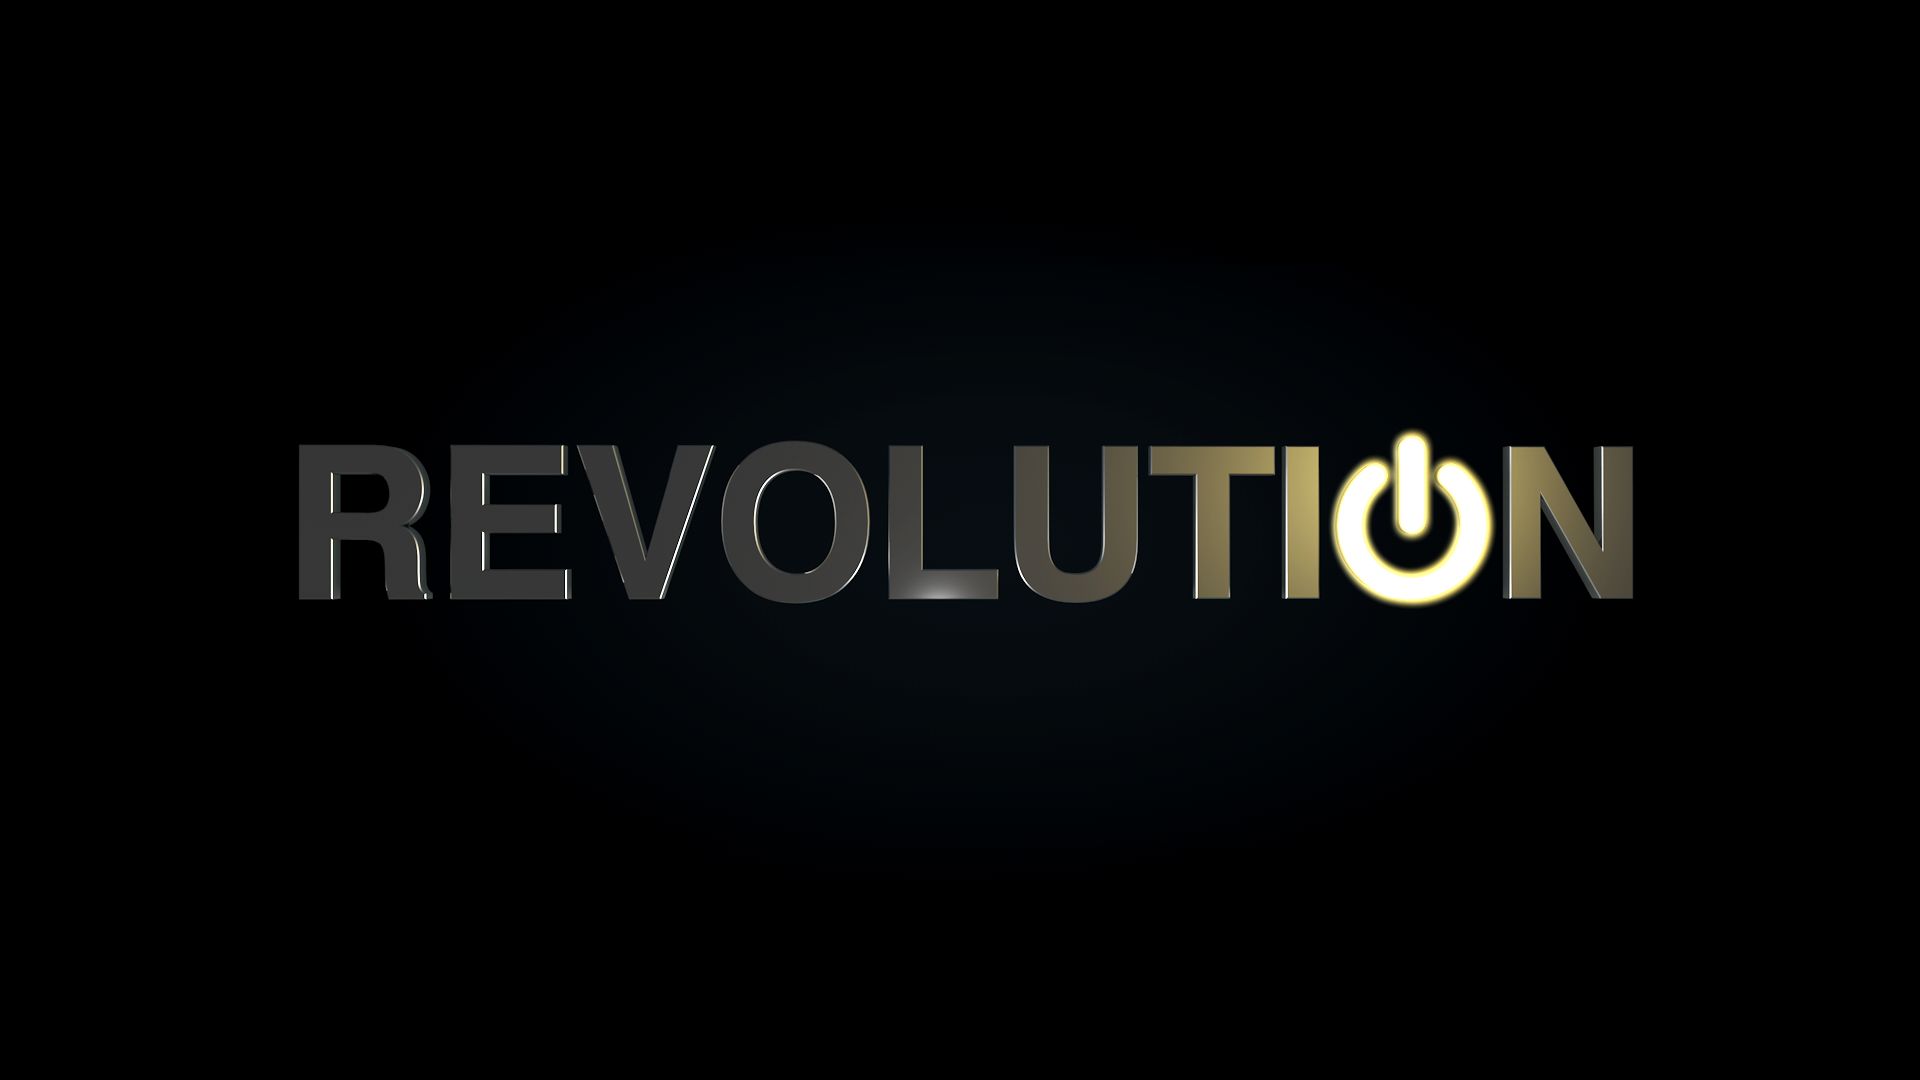 Descargar fondos de escritorio de Revolution HD